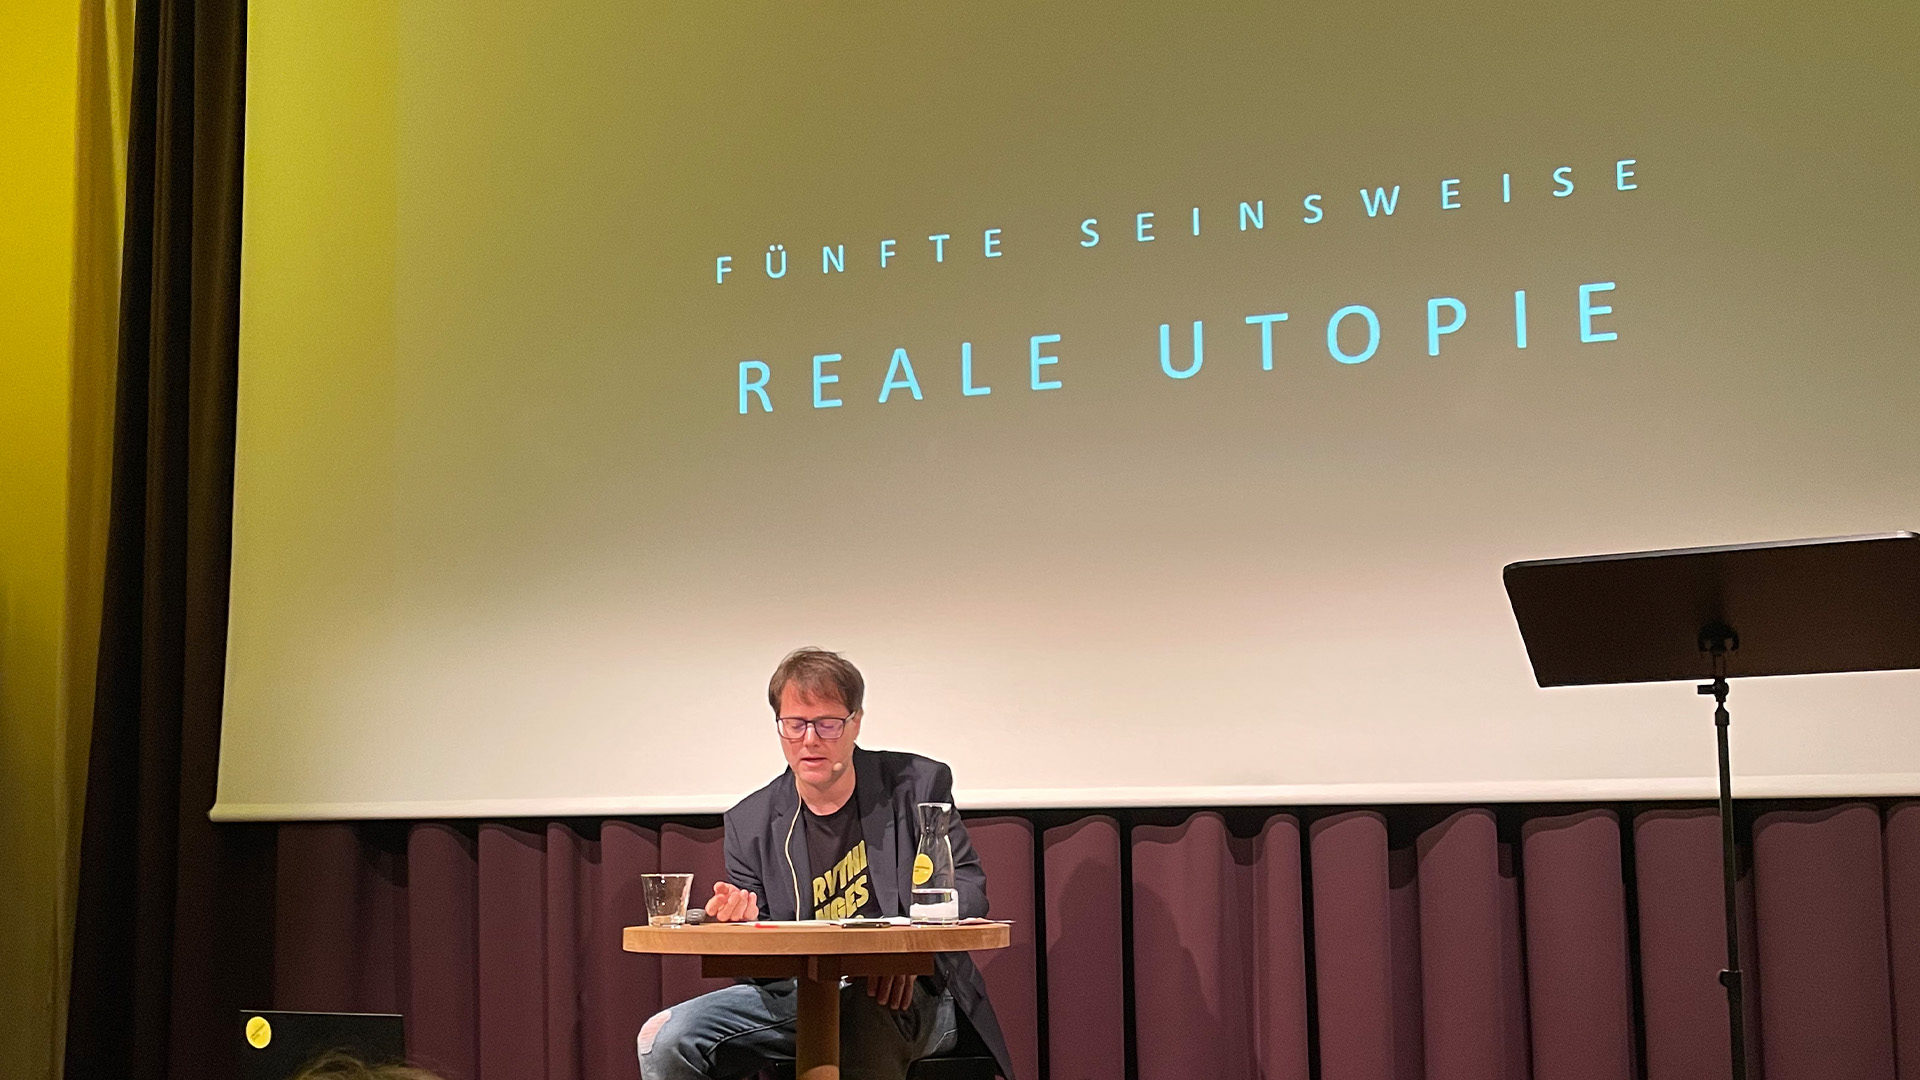 Das Bild zeigt Milo Rau lesend auf der Bühne im Literaturhaus Zürich. Im Hintergrund ist eingeblendet: "Fünfte Seinsweise. Reale Utopie"